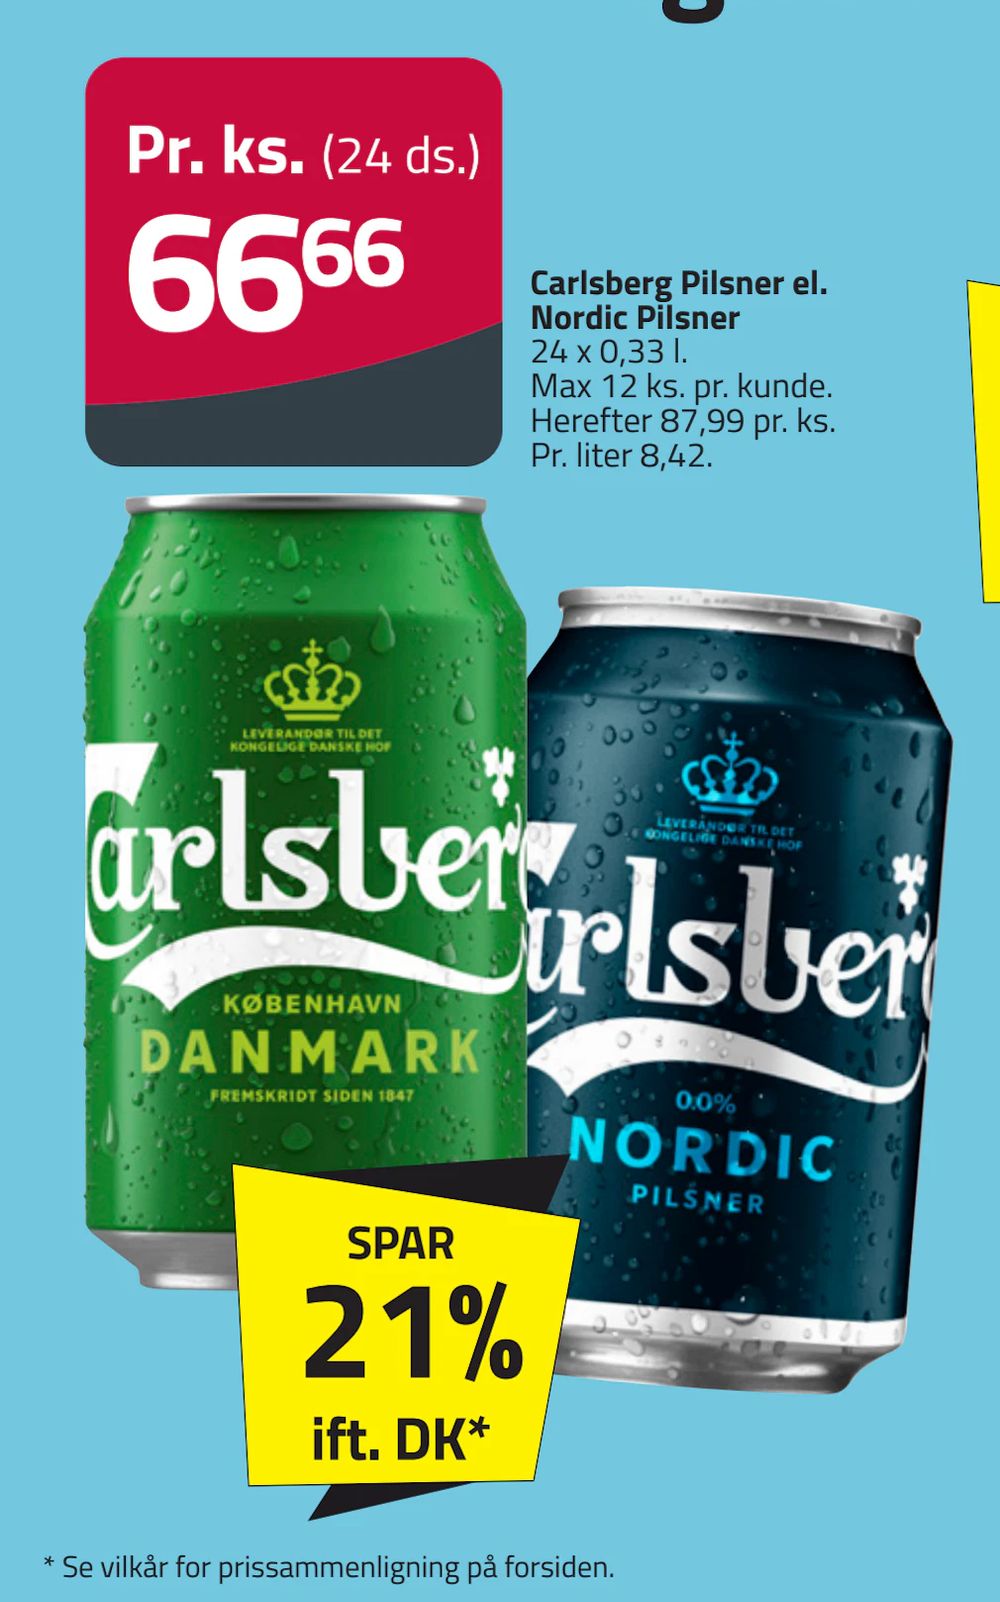 Tilbud på Carlsberg Pilsner el. Nordic Pilsner fra Fleggaard til 66,66 kr.